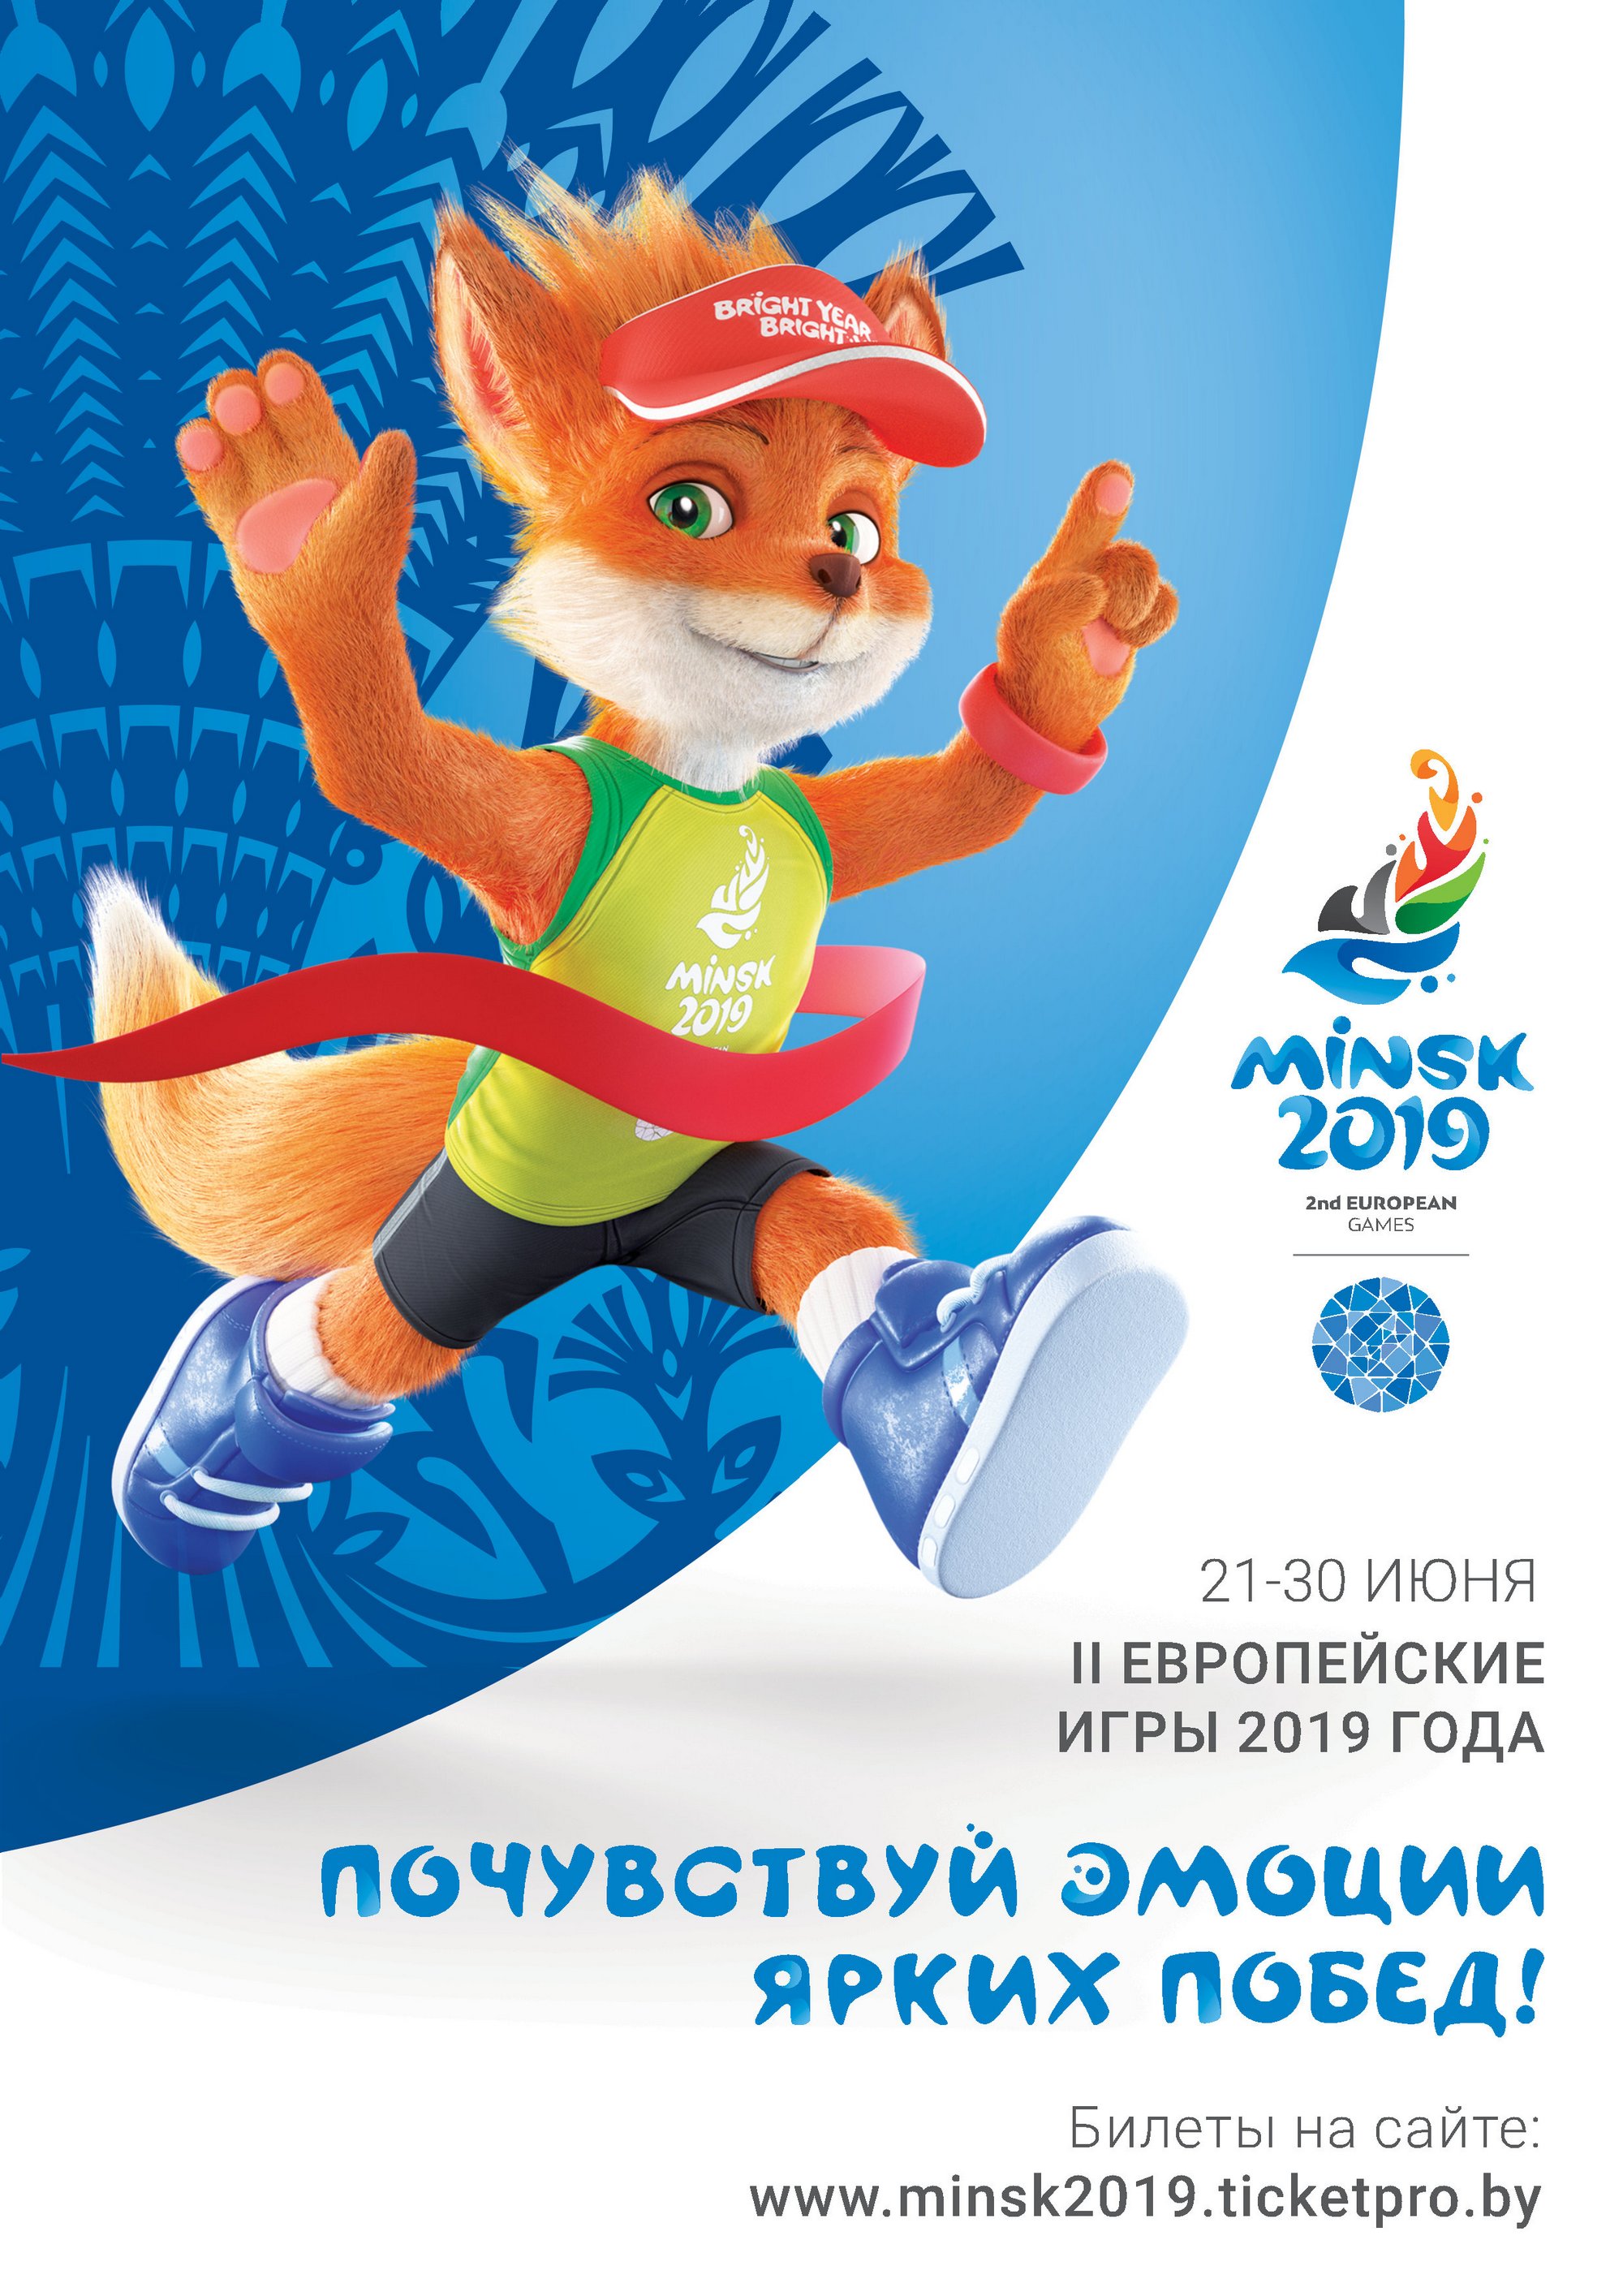 Фото: Дирекция II Европейских Игр 2019 года 